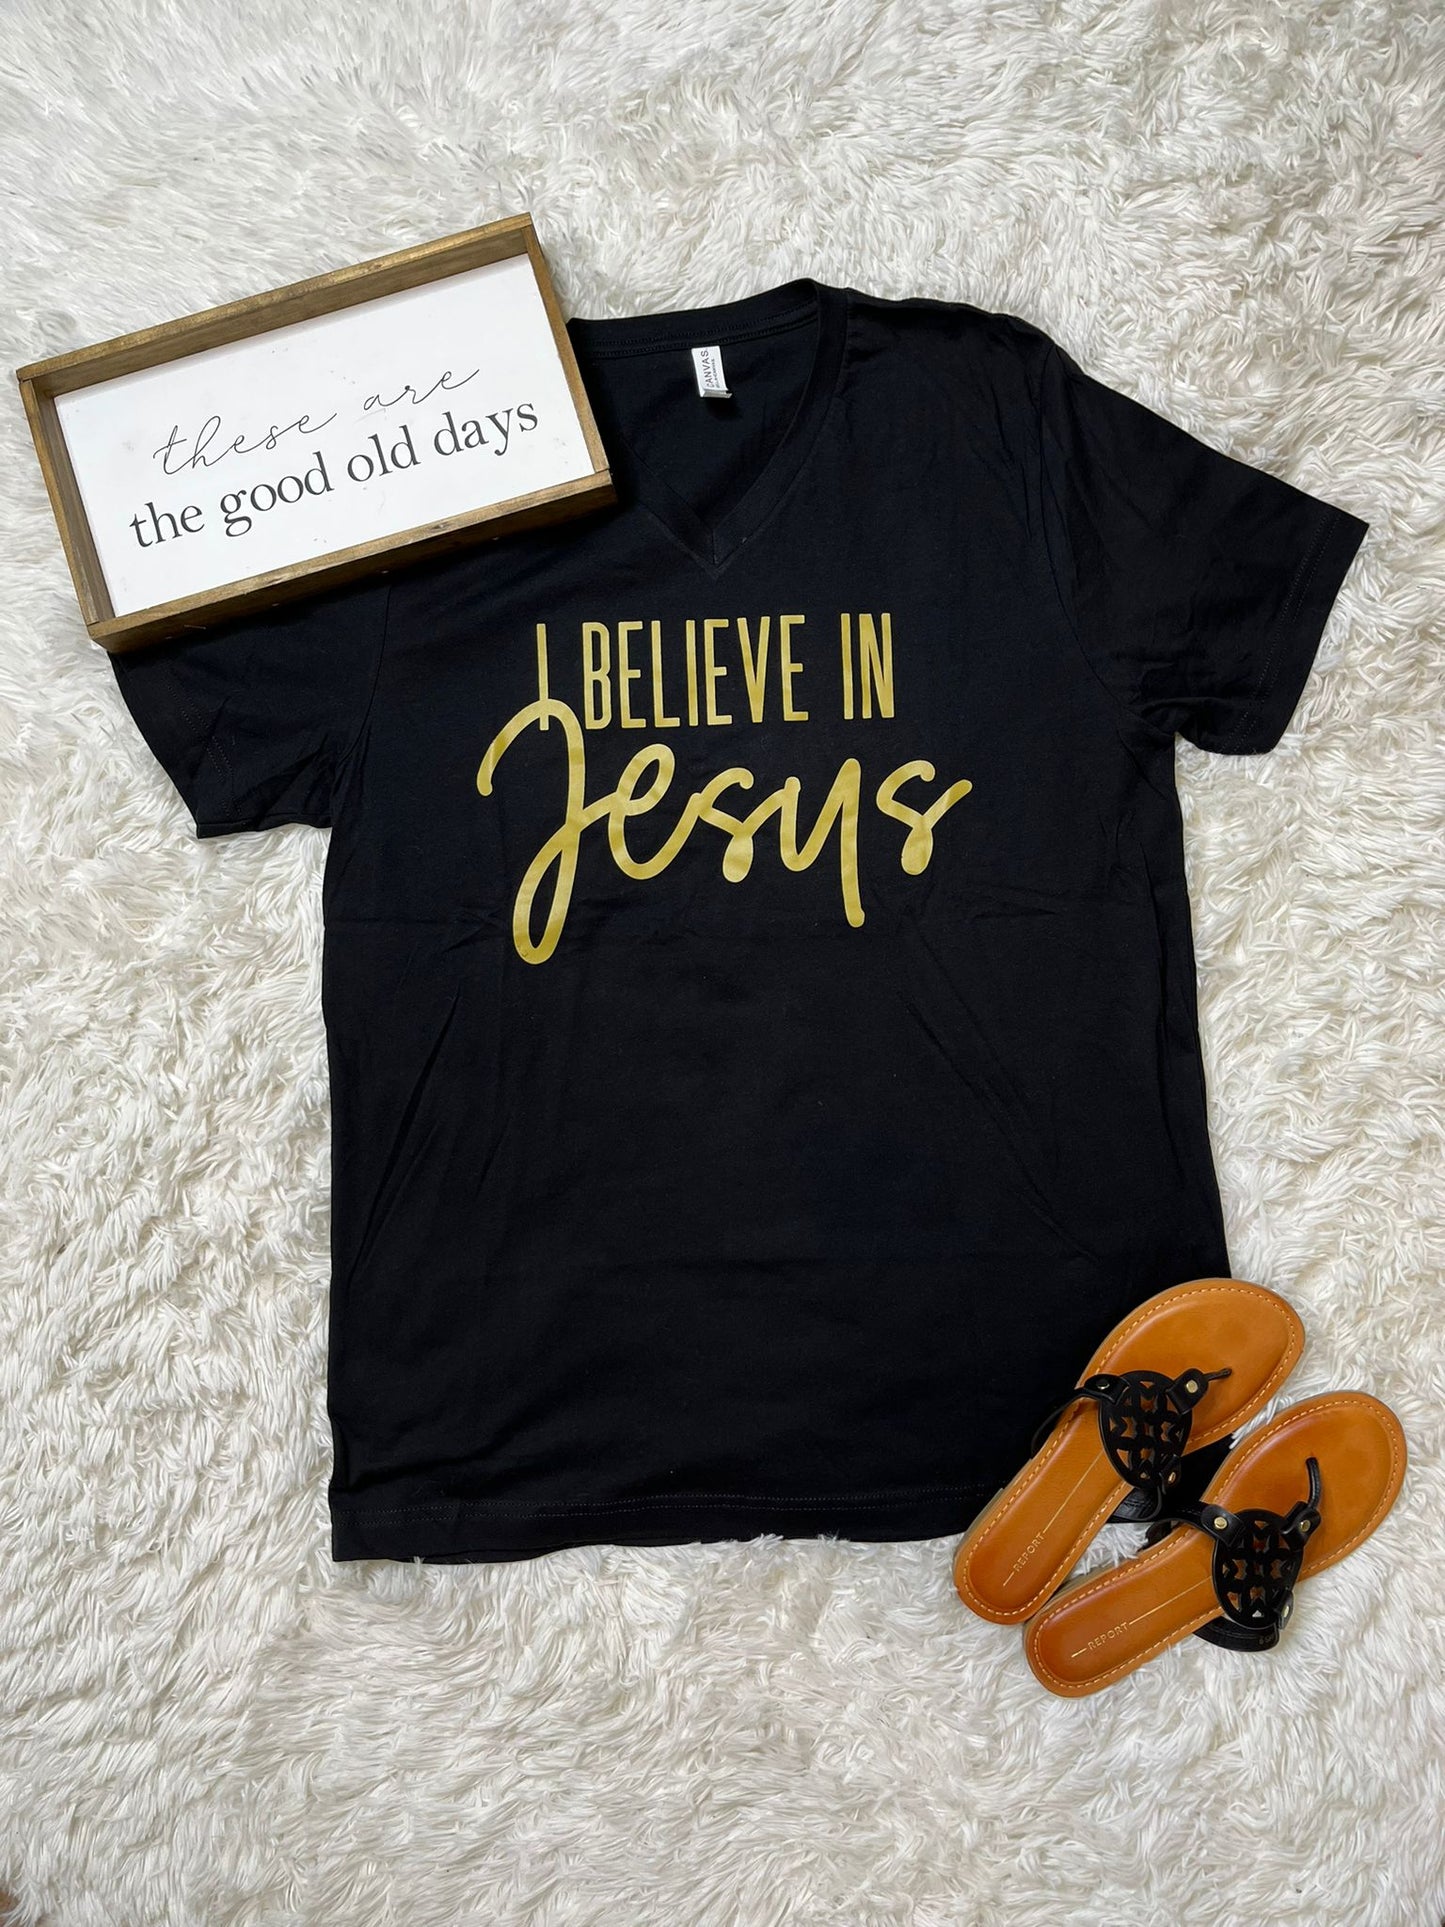 I believe in a Jesus